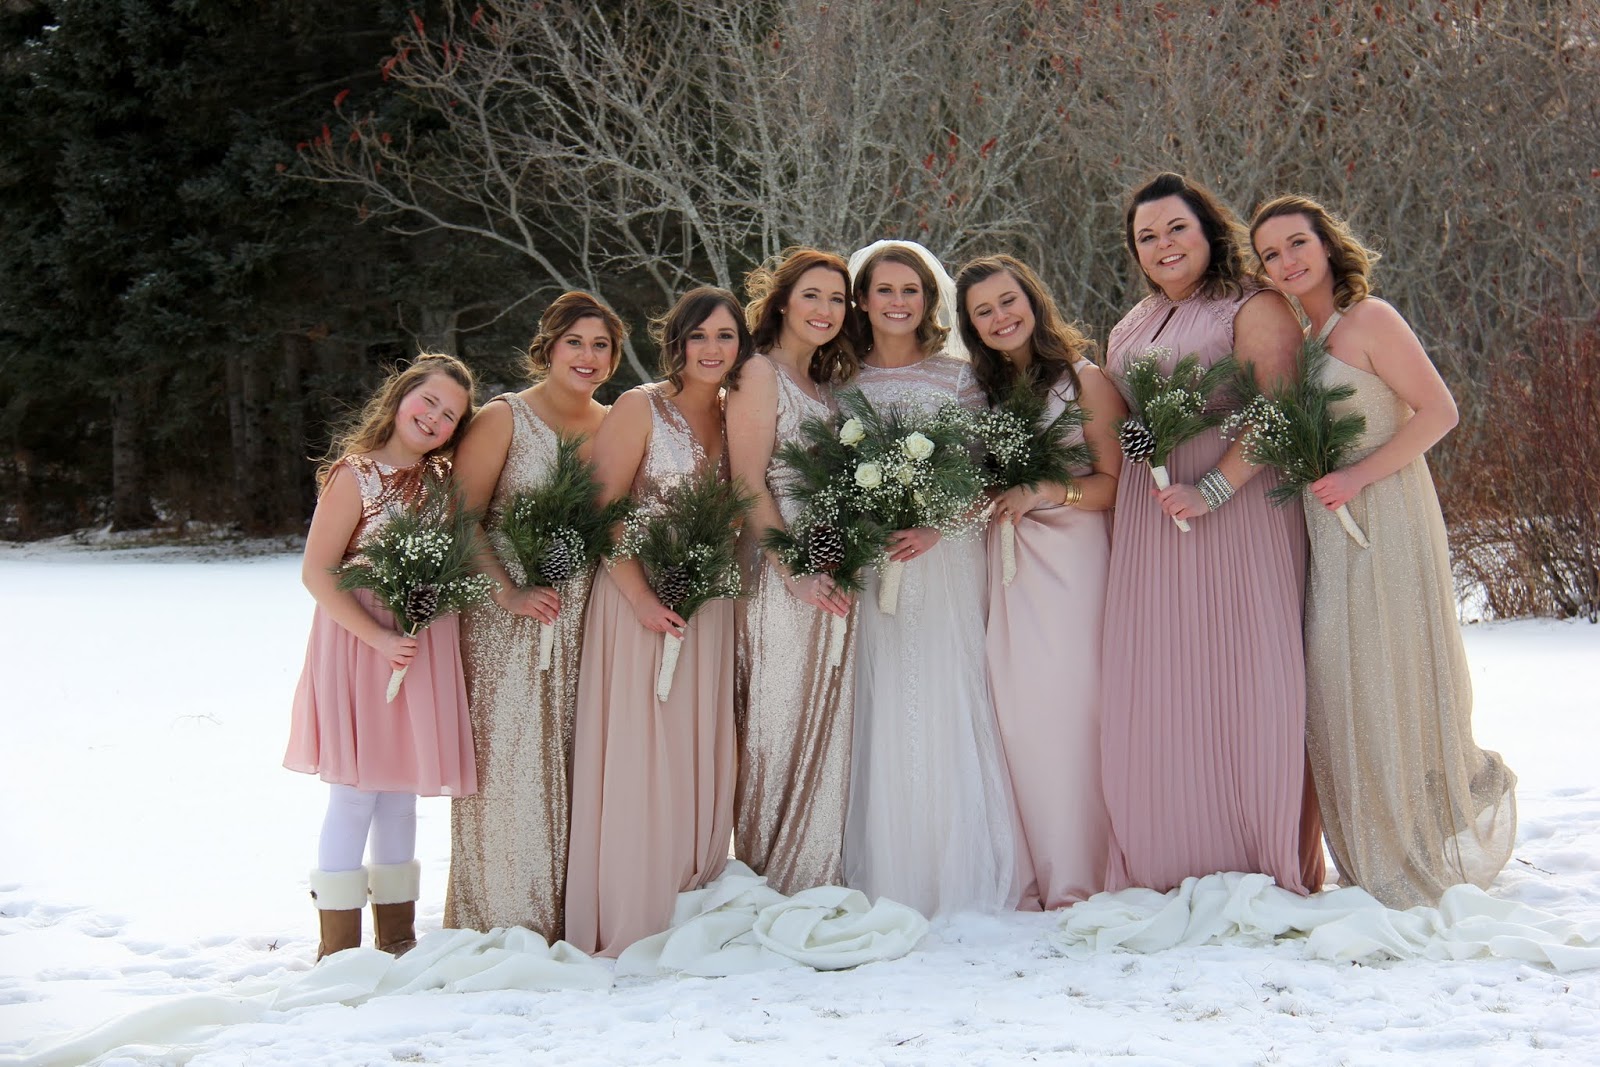 Aiken House & Gardens: A Beautiful Winter Wedding